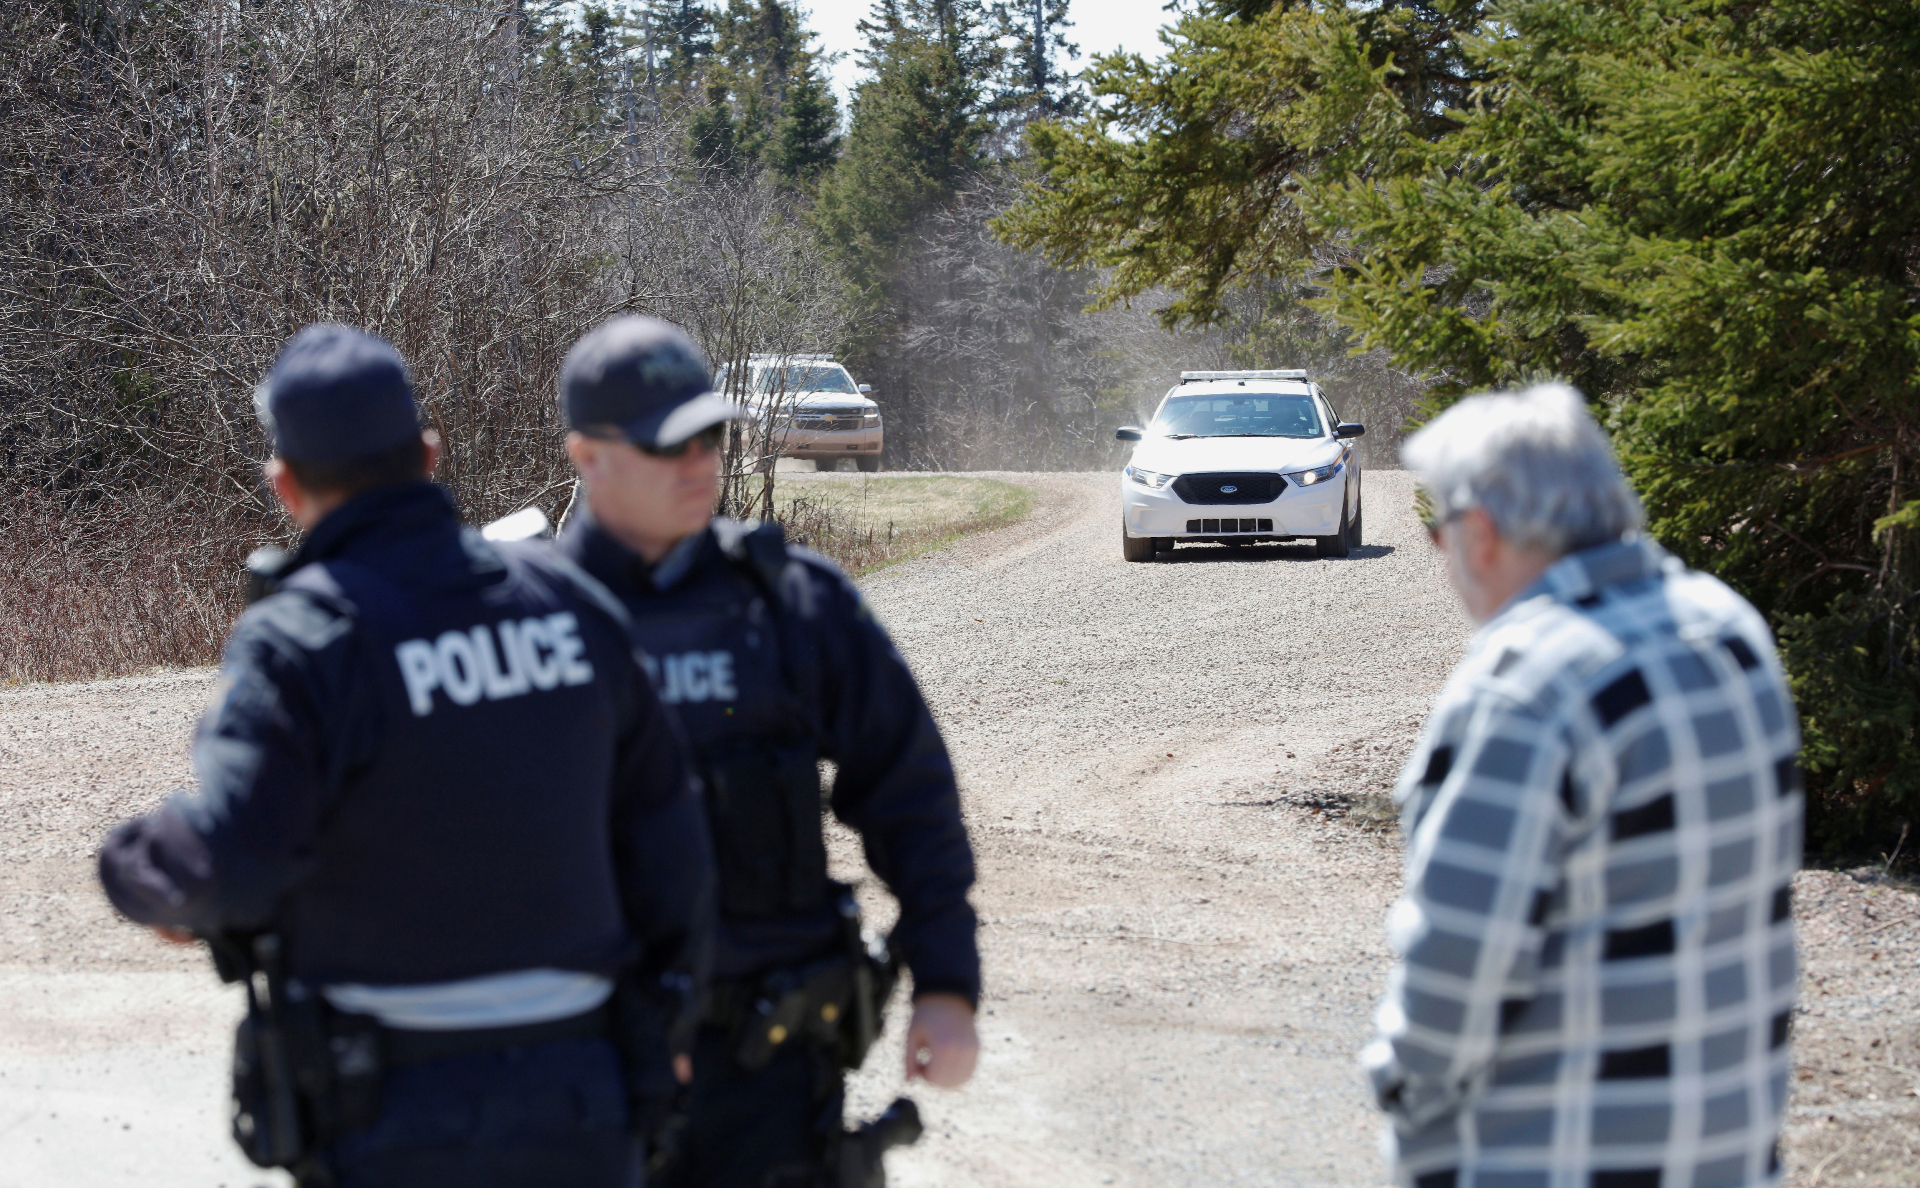 Полиция задержала устроившего стрельбу мужчину на юго-востоке Канады